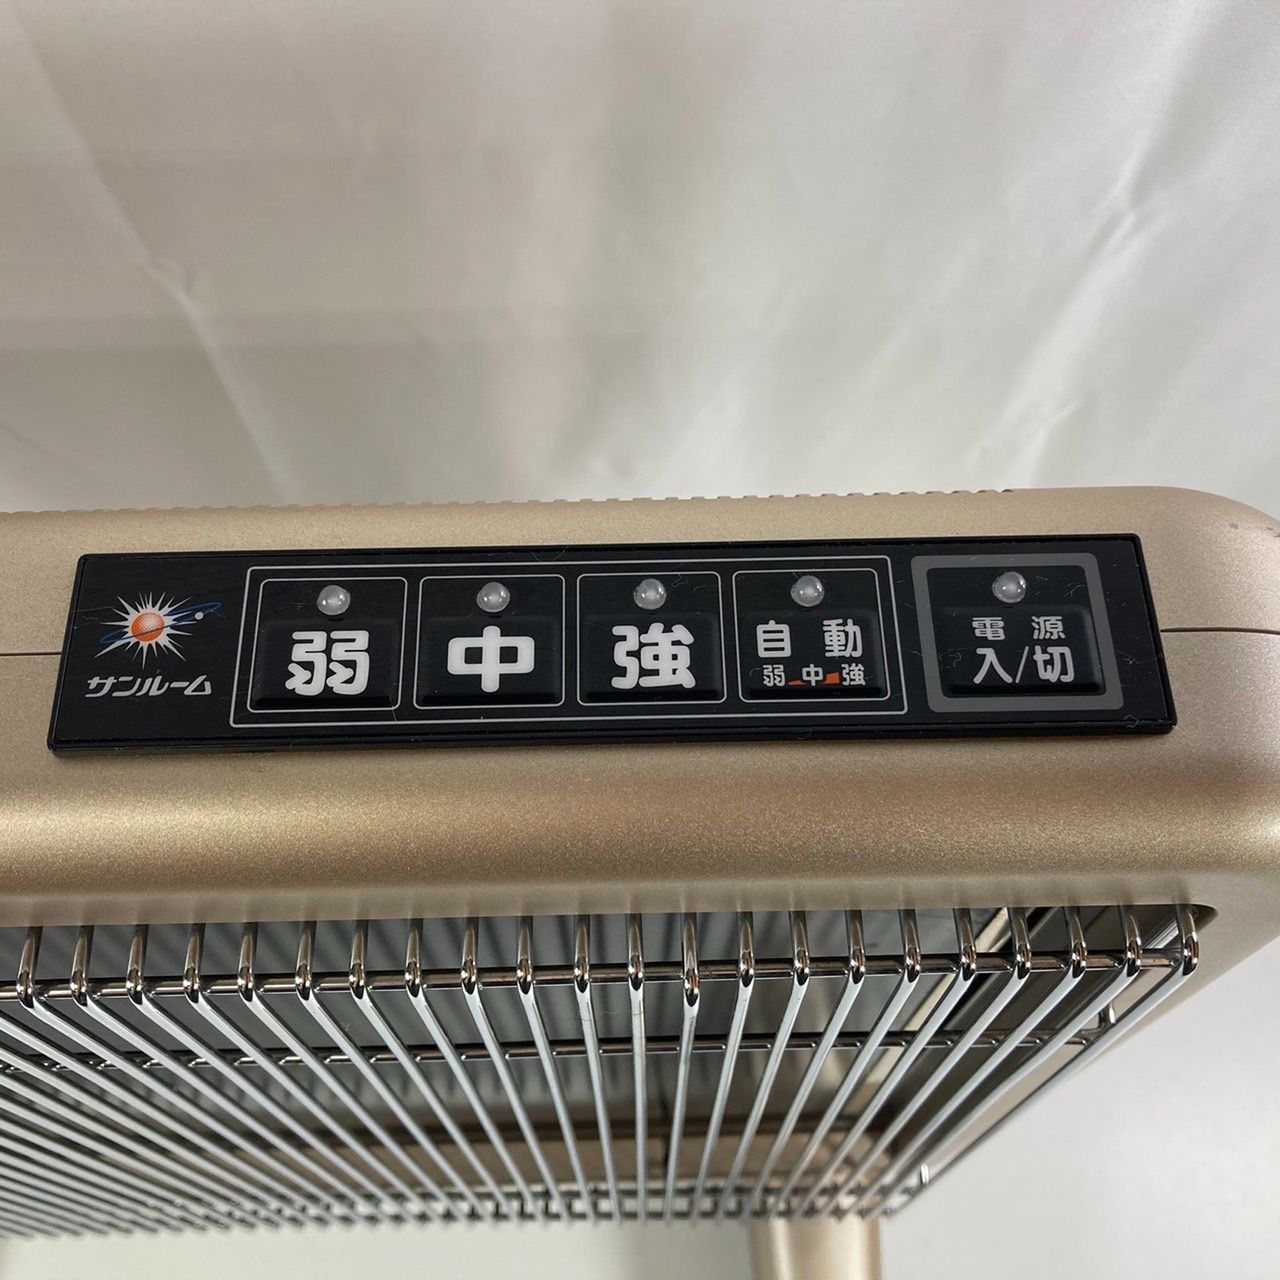 【M-1】サンルーム 800EX 遠赤外線輻射式暖房器 パネルヒーター